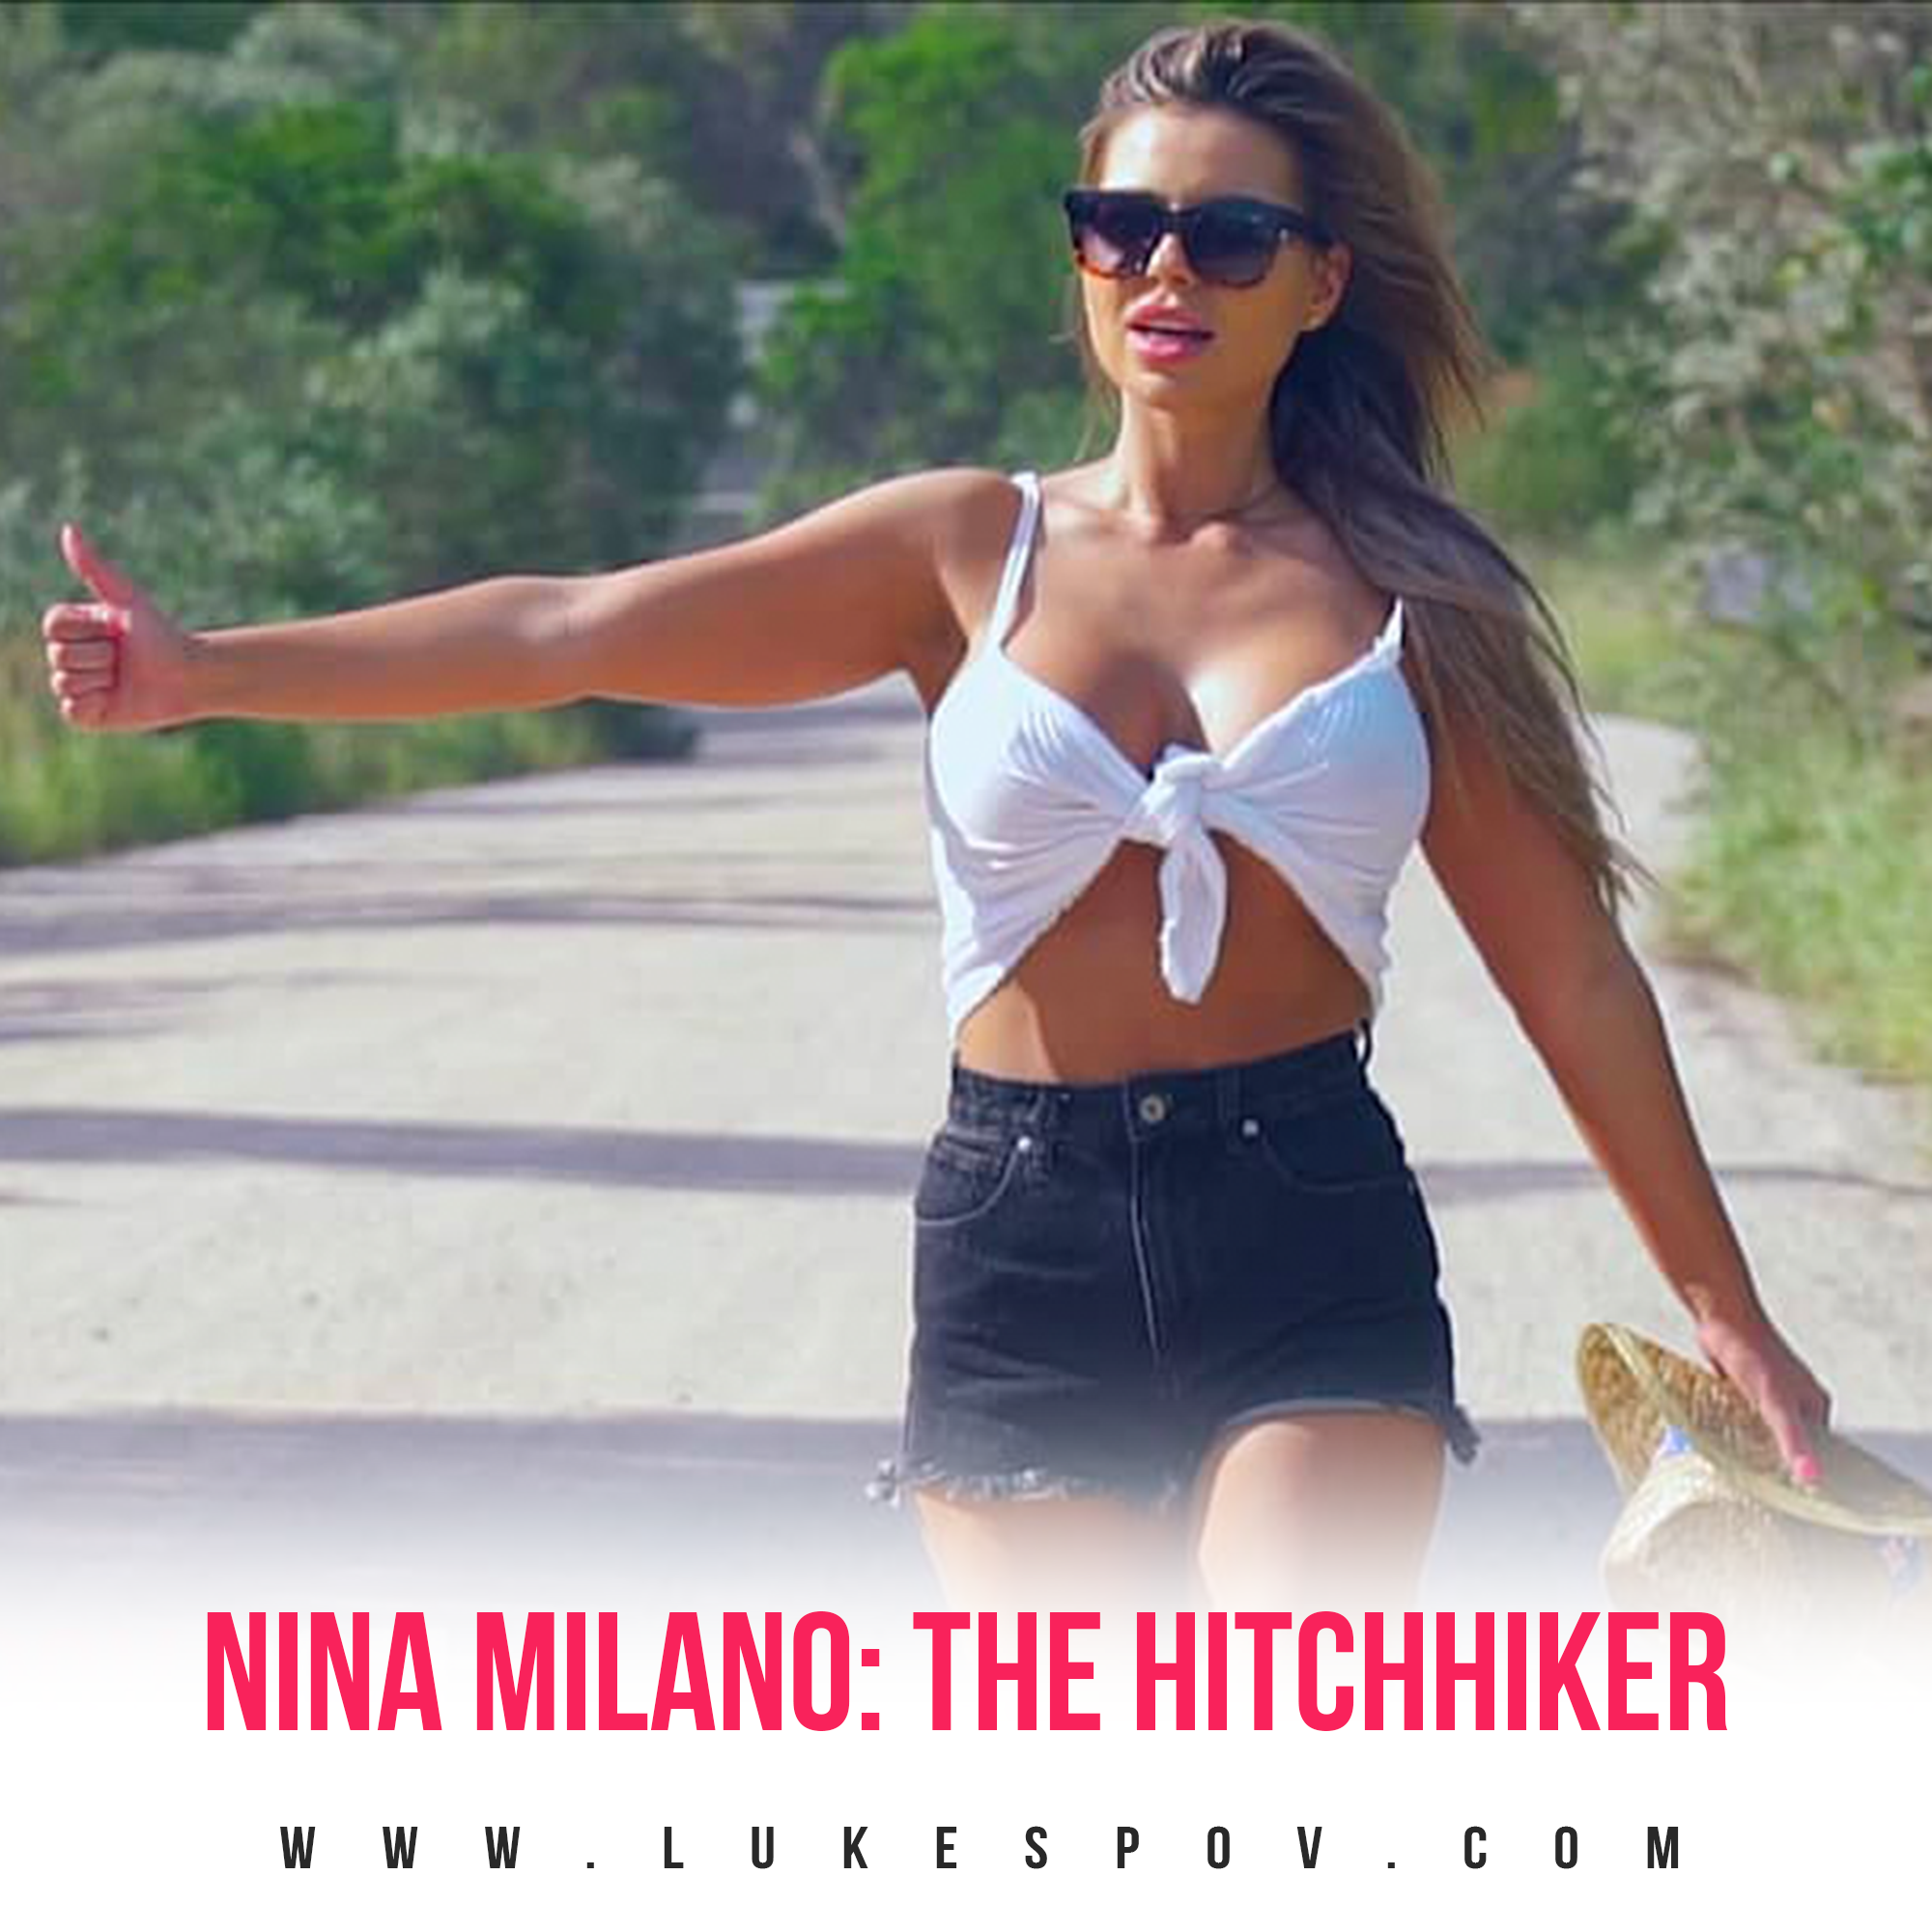 HITCHHIKER NINA MILANO FUCKS OUTDOORS